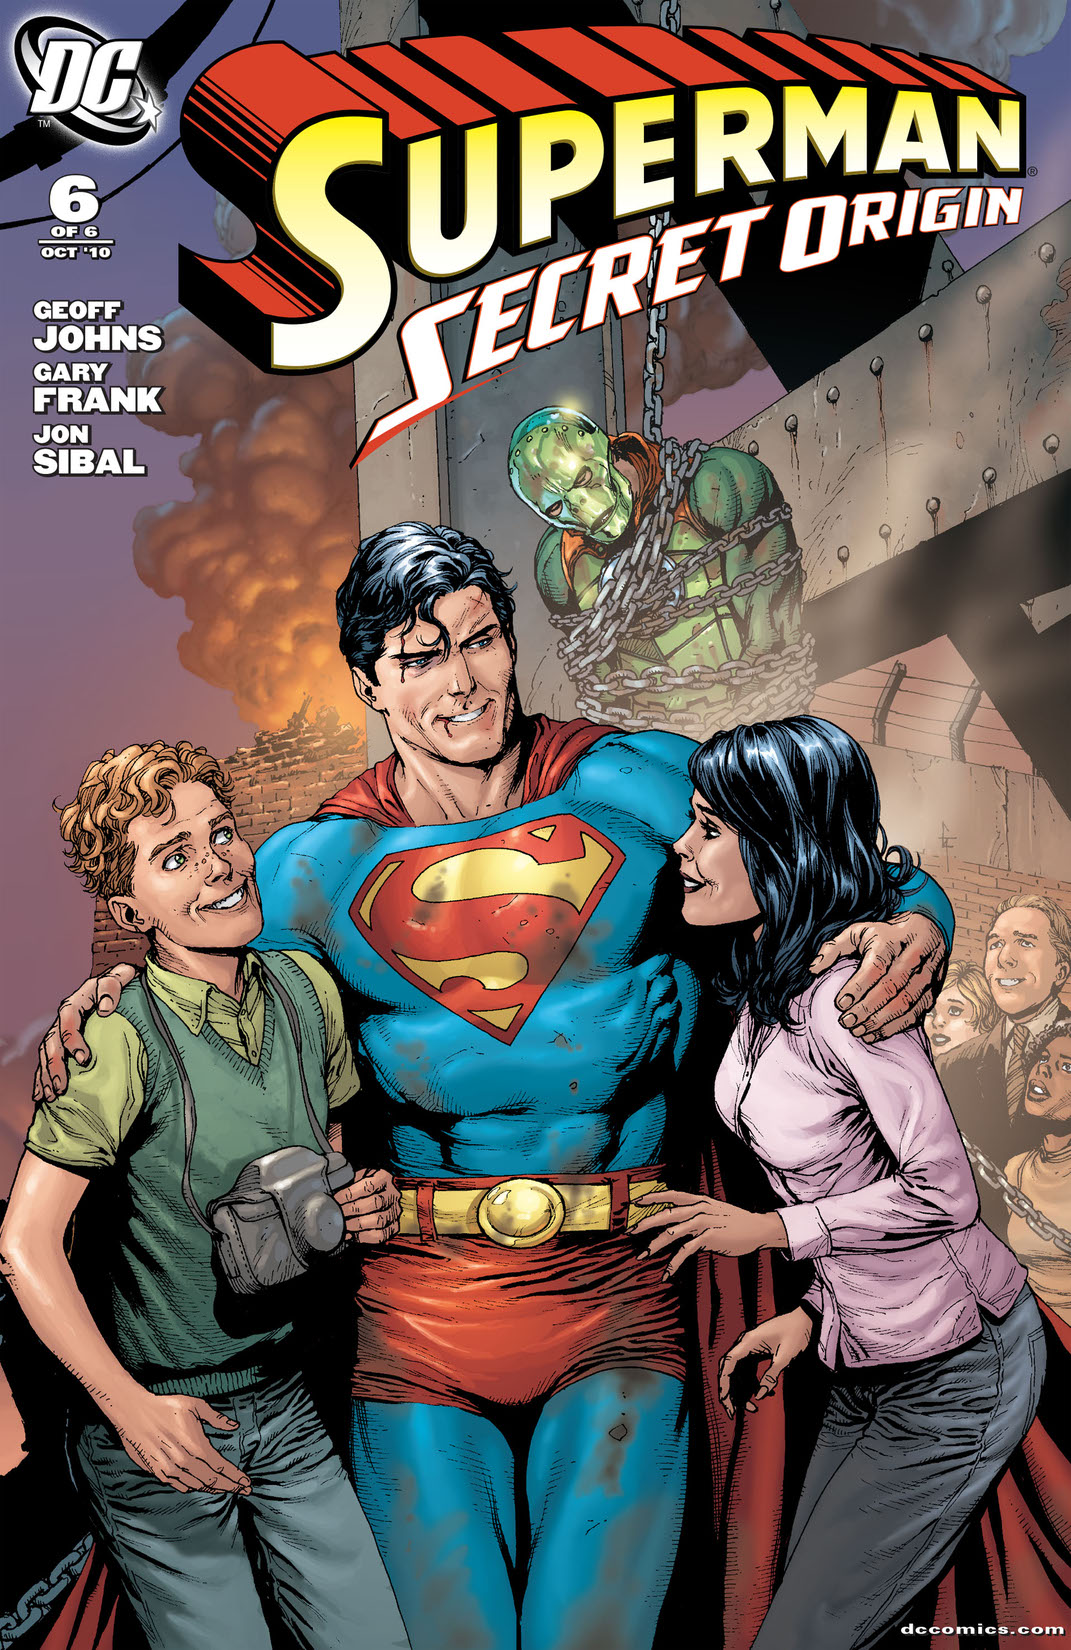 Superman: Secret Origin #6 preview images